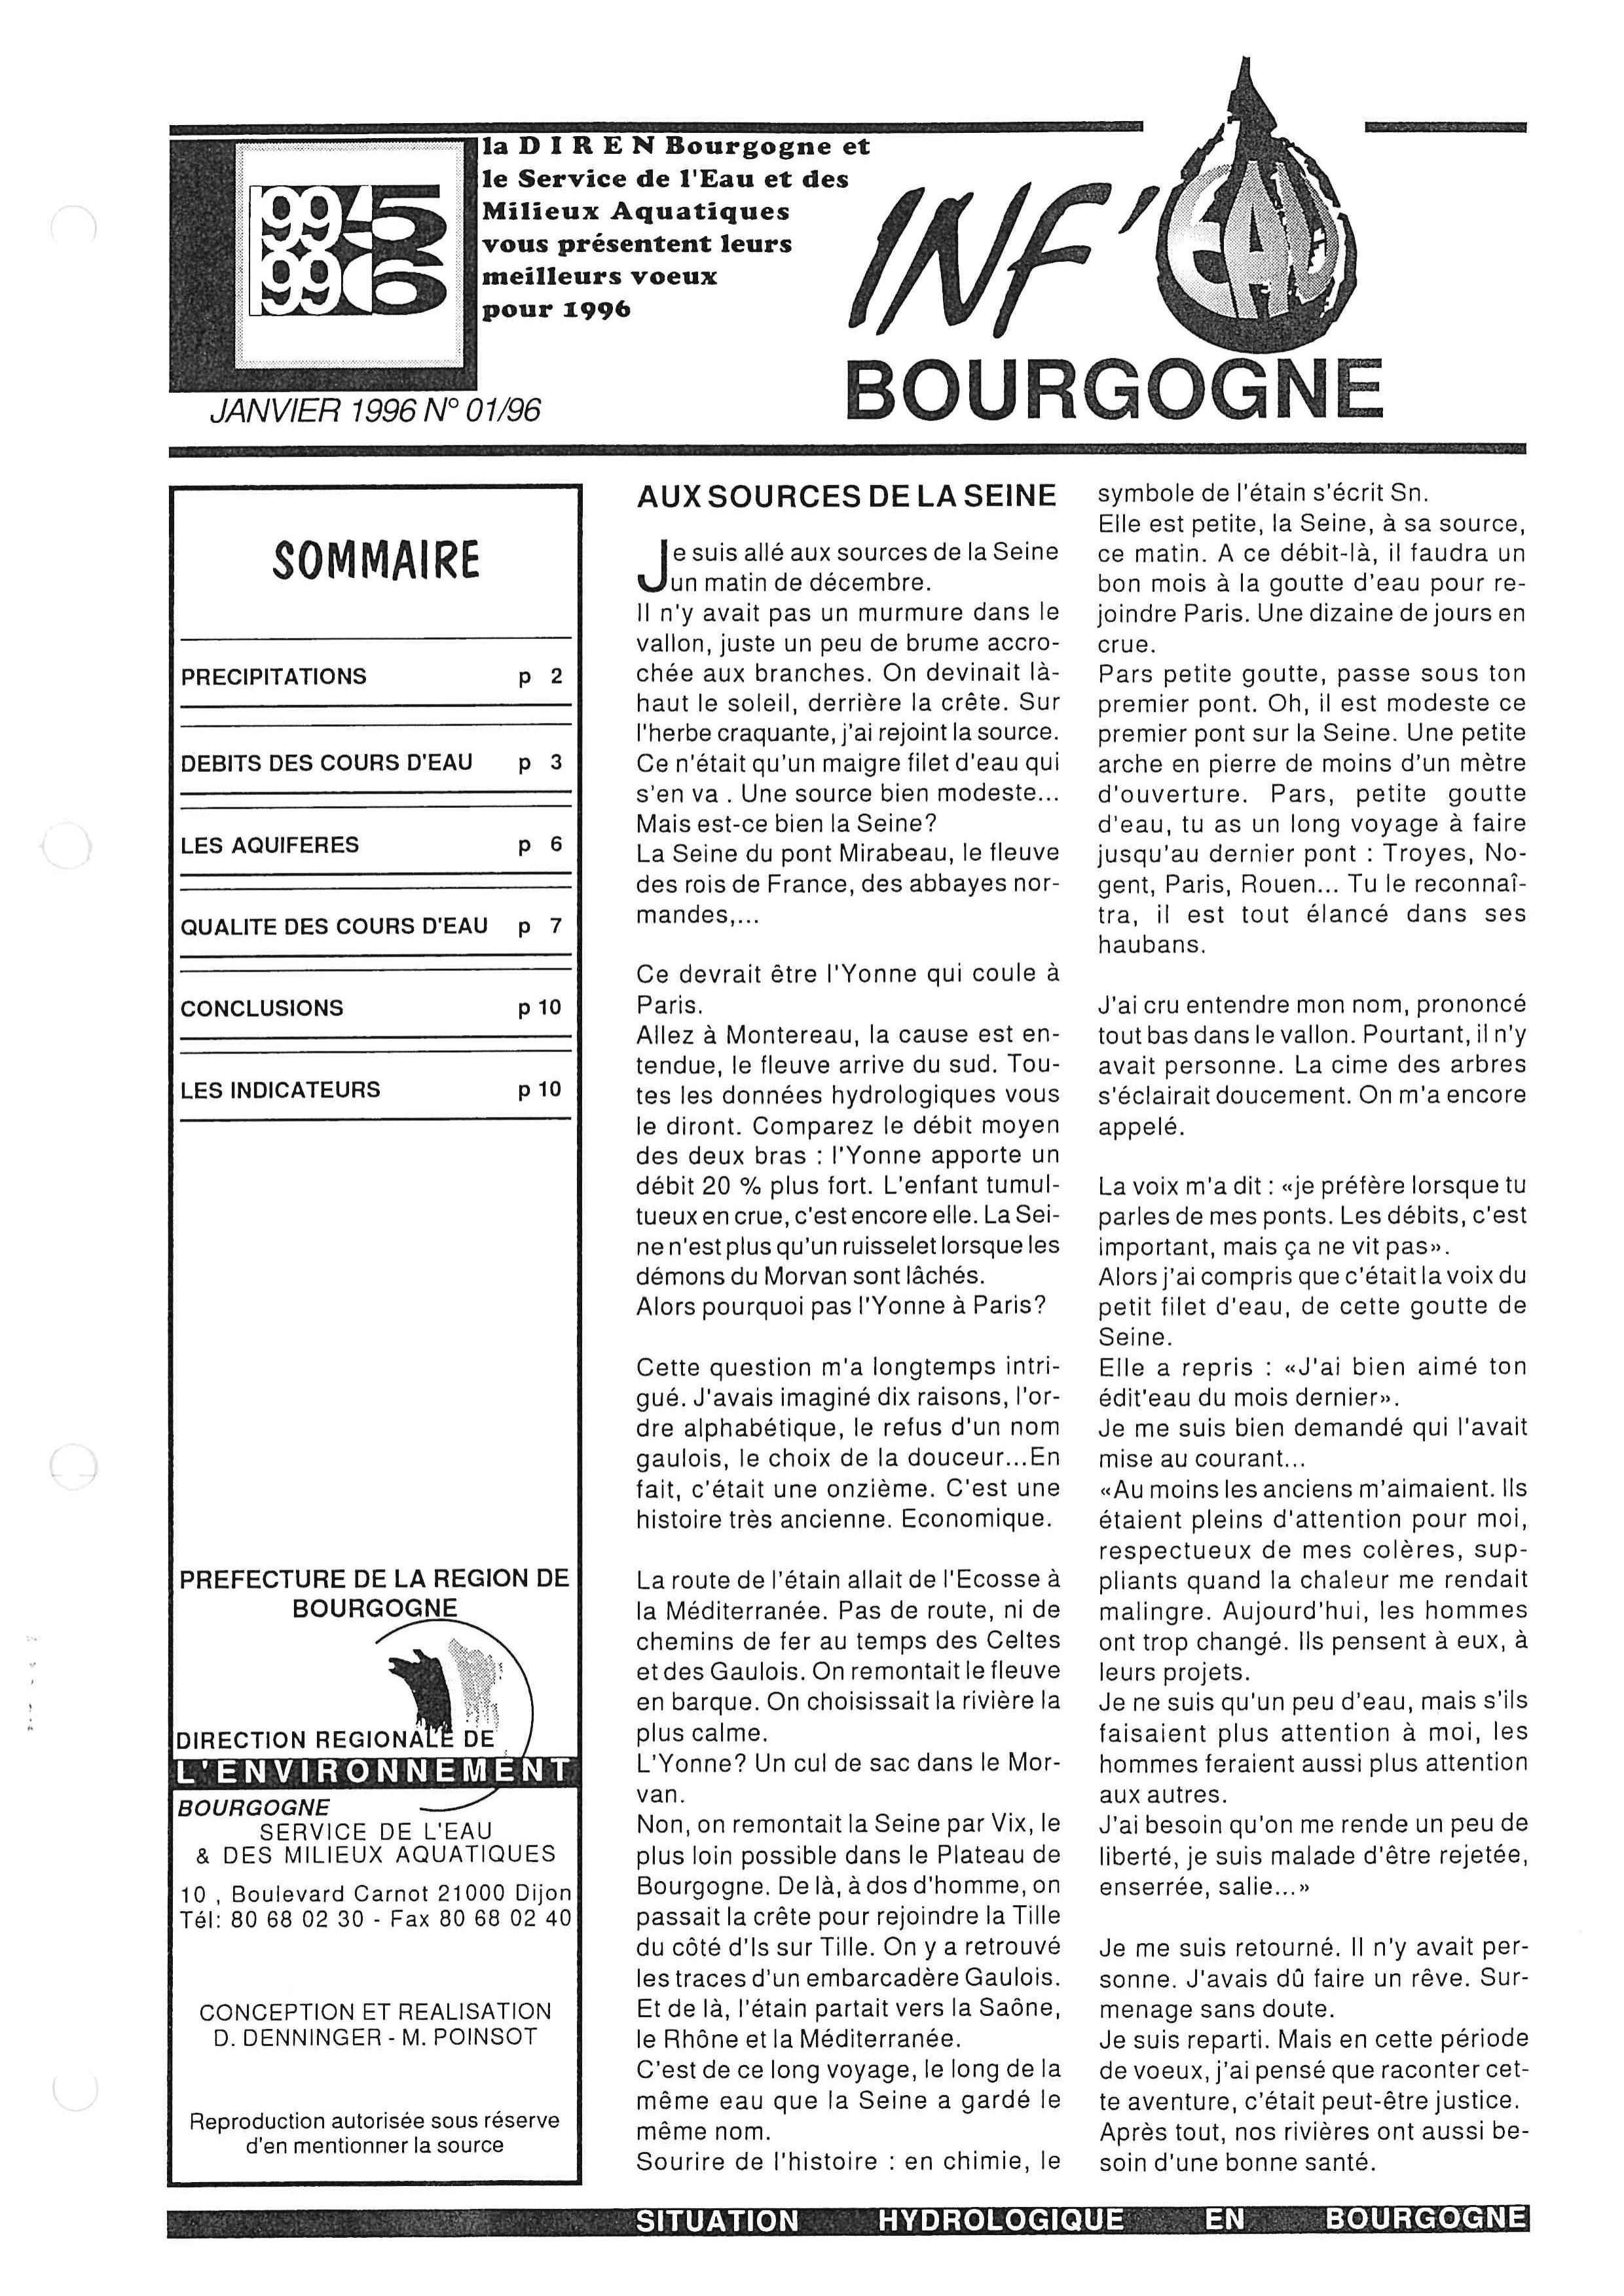 Bulletin hydrologique du mois de décembre 1995